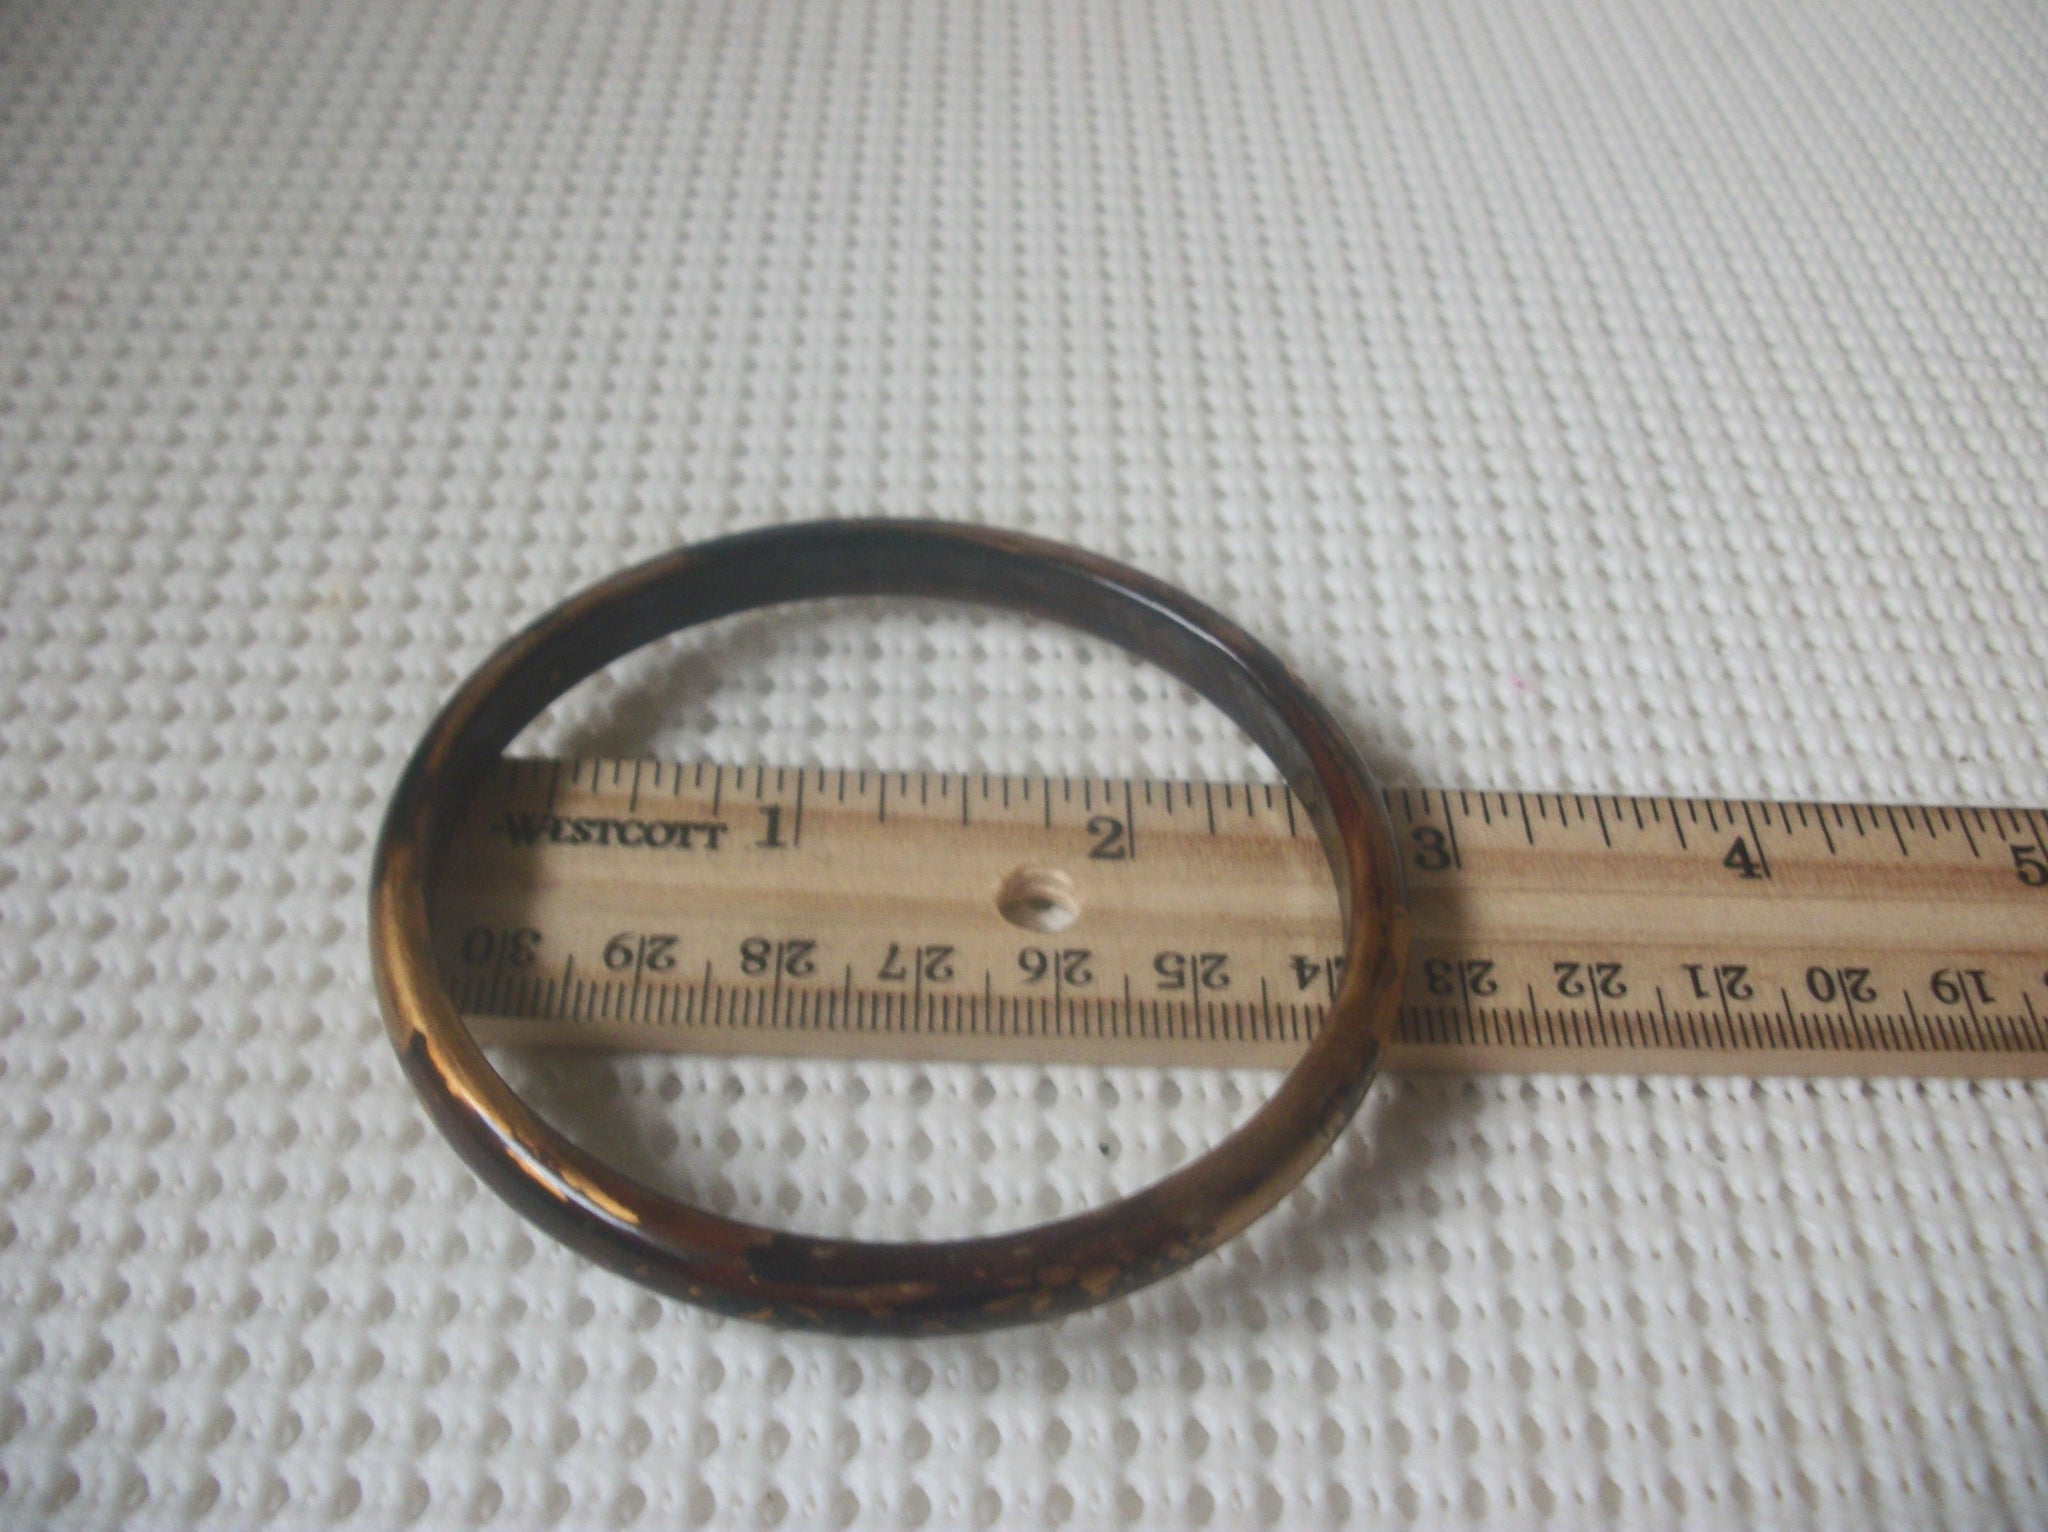 Vintage Bangle Bracelet, Golden Dark Brown, Old Plastic, 70417